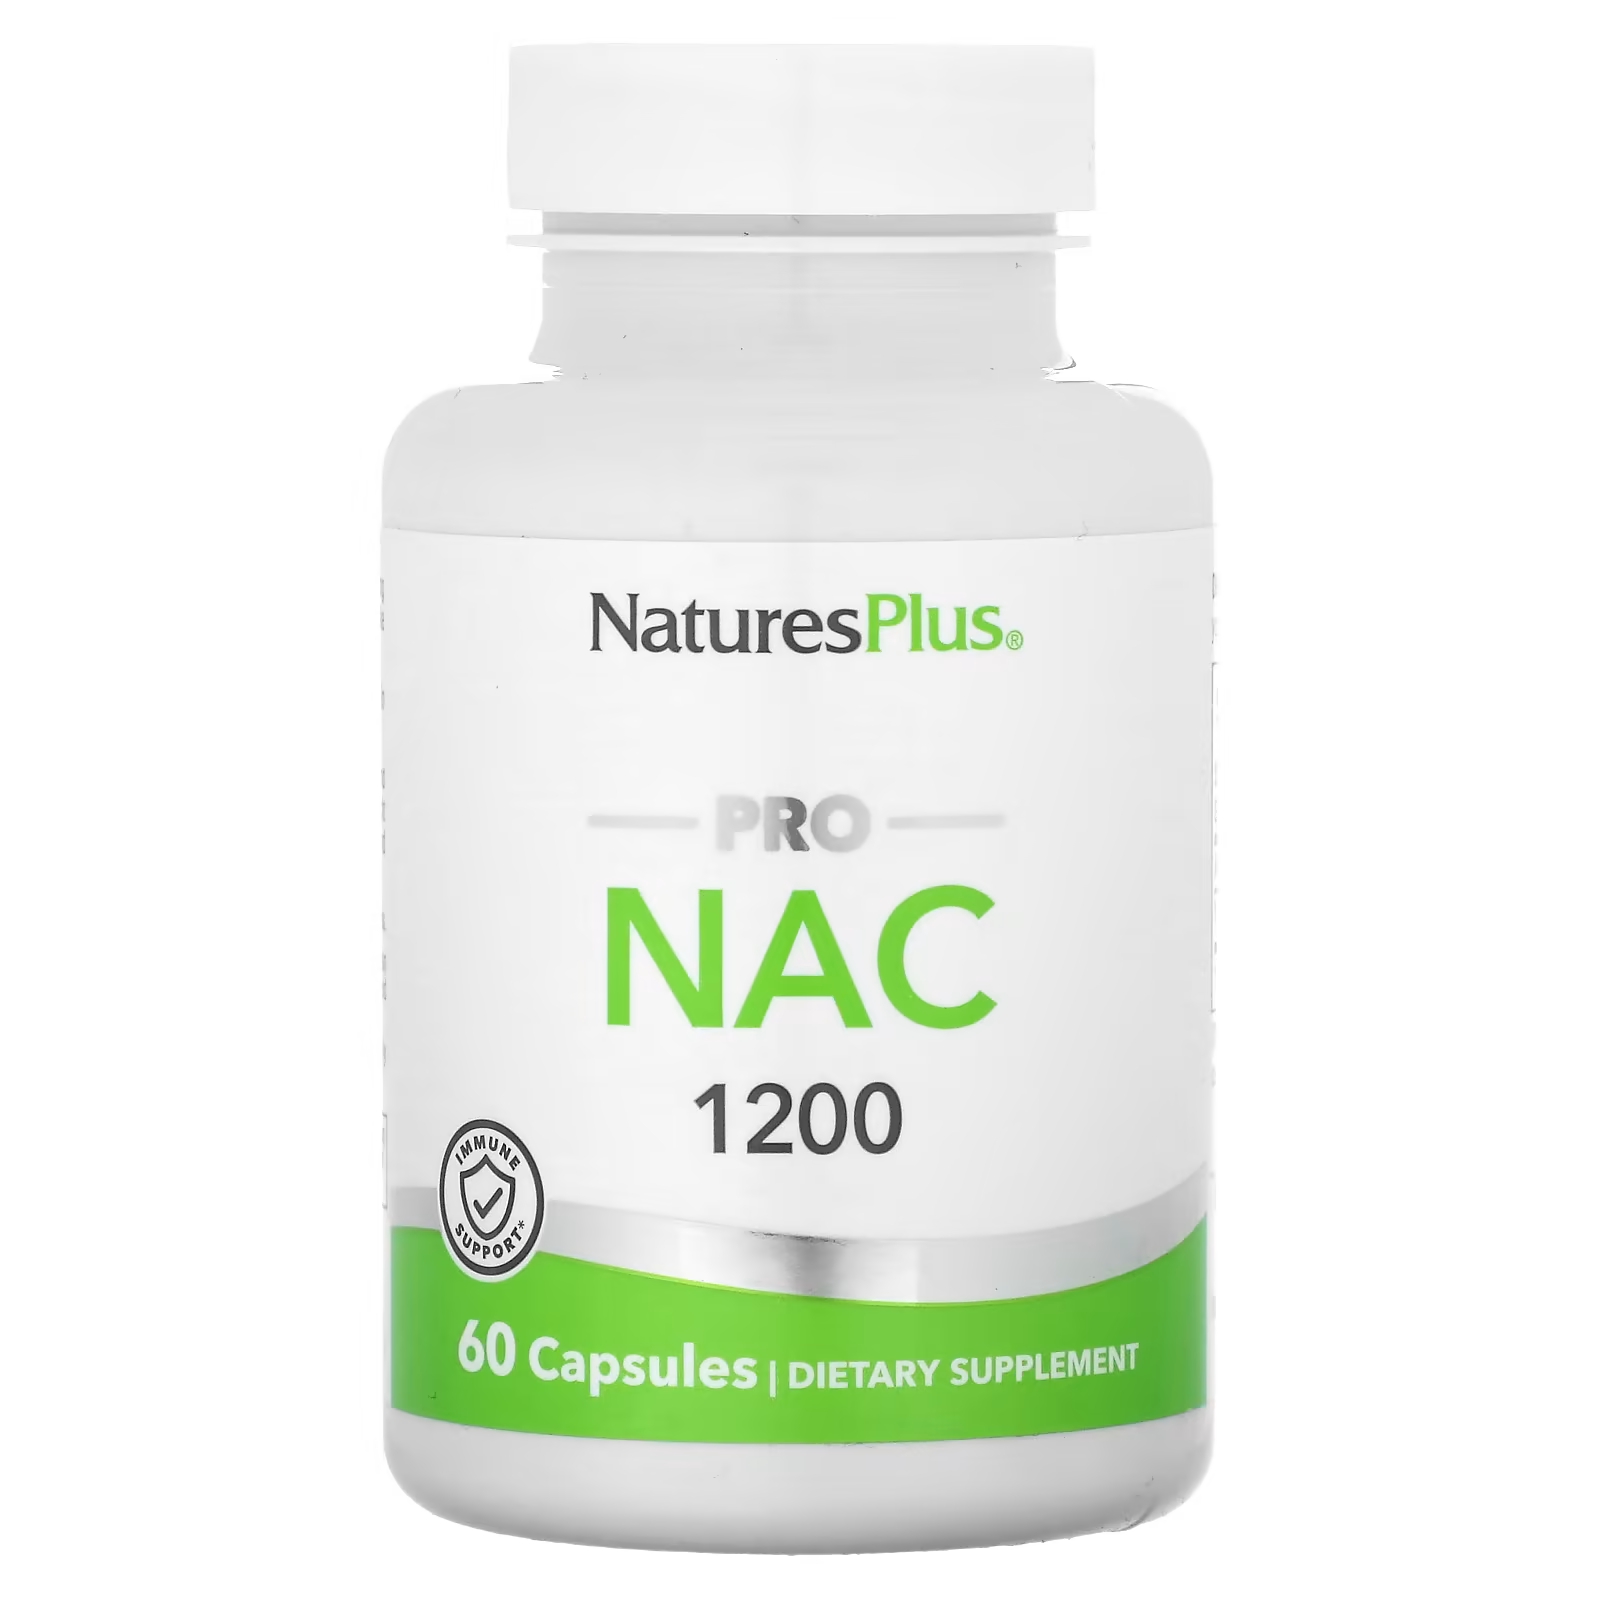 Пищевая добавка NaturesPlus Pro NAC 1200, 60 капсул